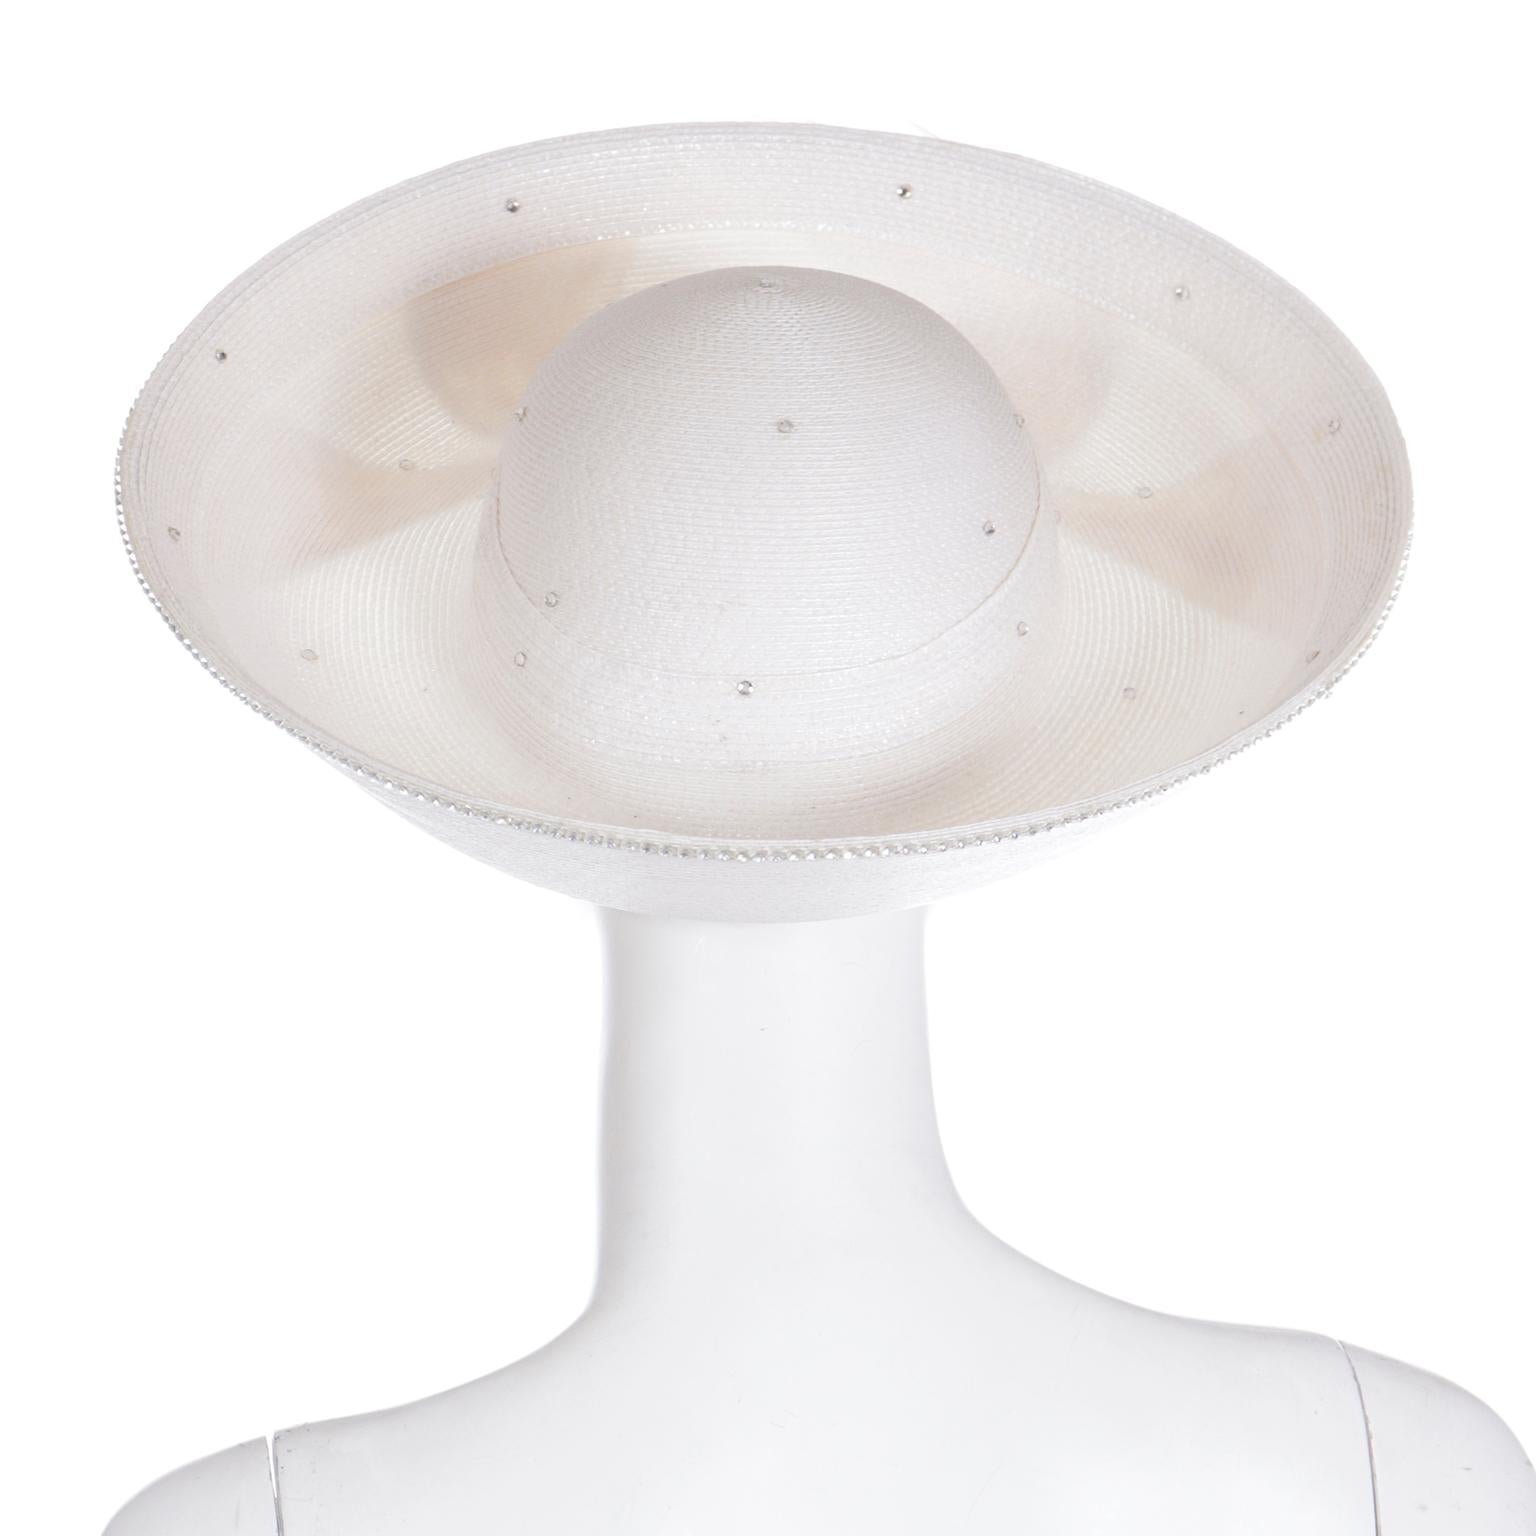 Women's Vintage Makins White & Cream Straw & Feather Statement Derby Church Hat